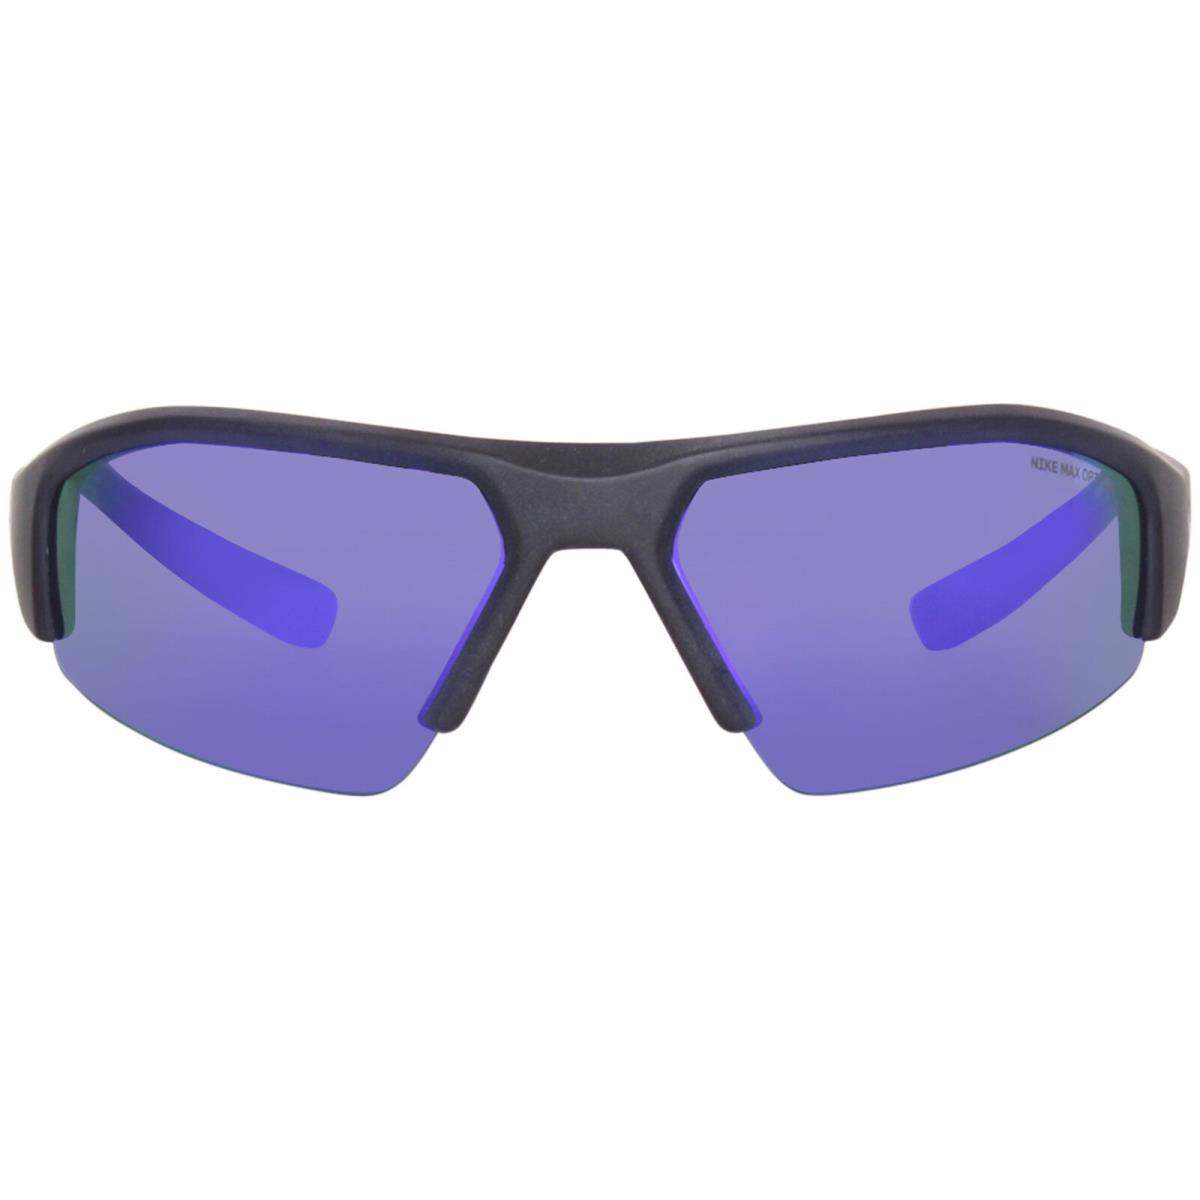 Nike Skylon Ace 22-M DV2151 451 Sunglasses Matte Obsidian/violet Mirror 70mm - Frame: Gray, Lens: Purple